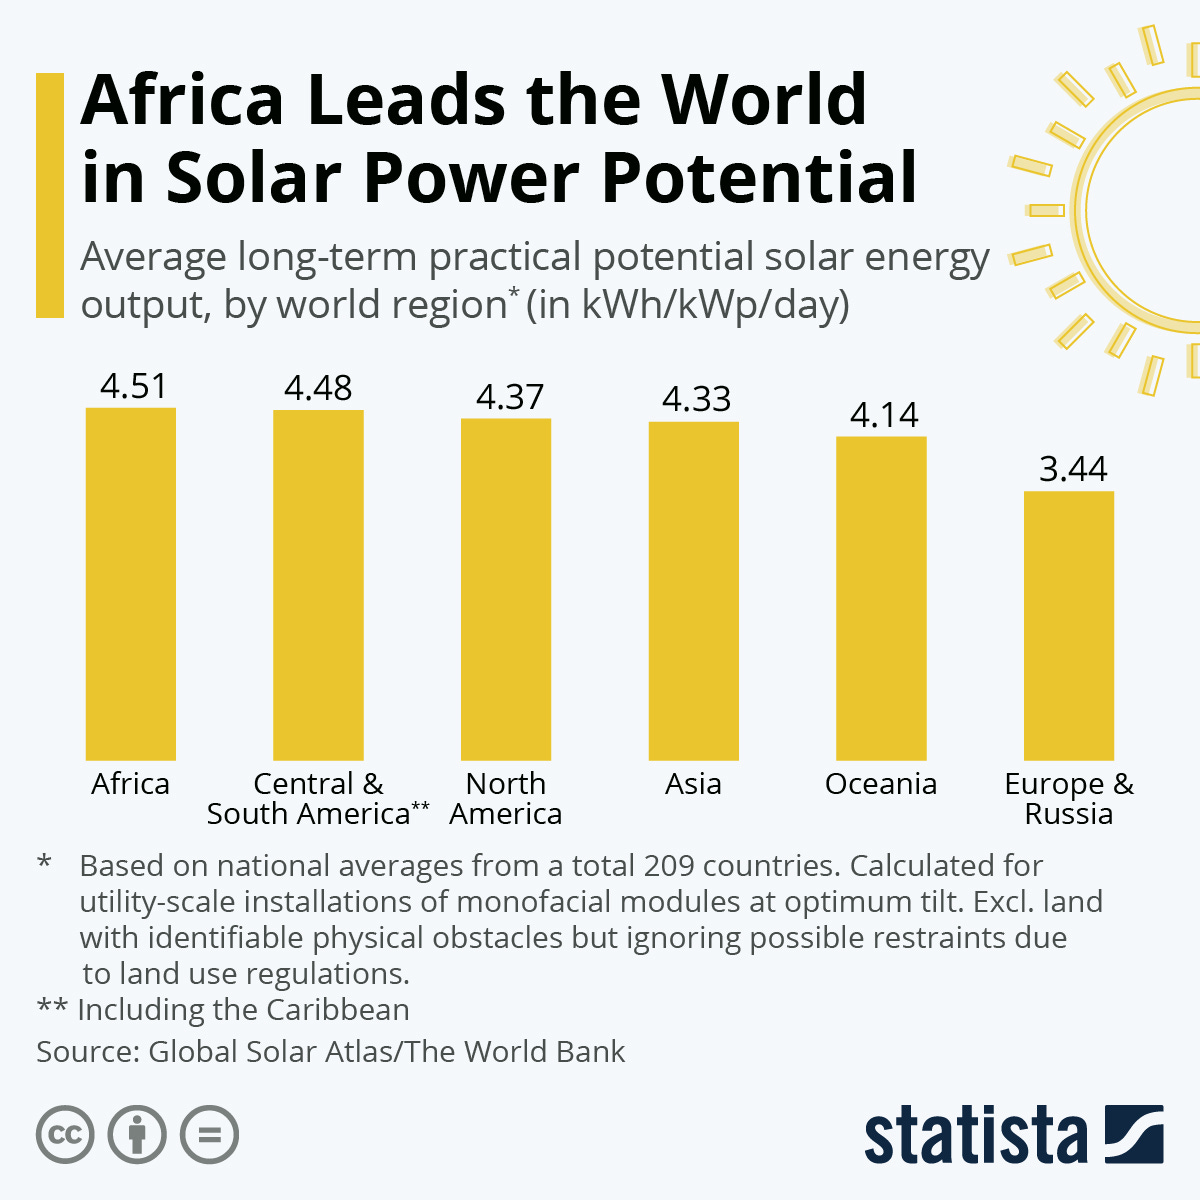 Visualización de Statista sobre la capacidad solar de África